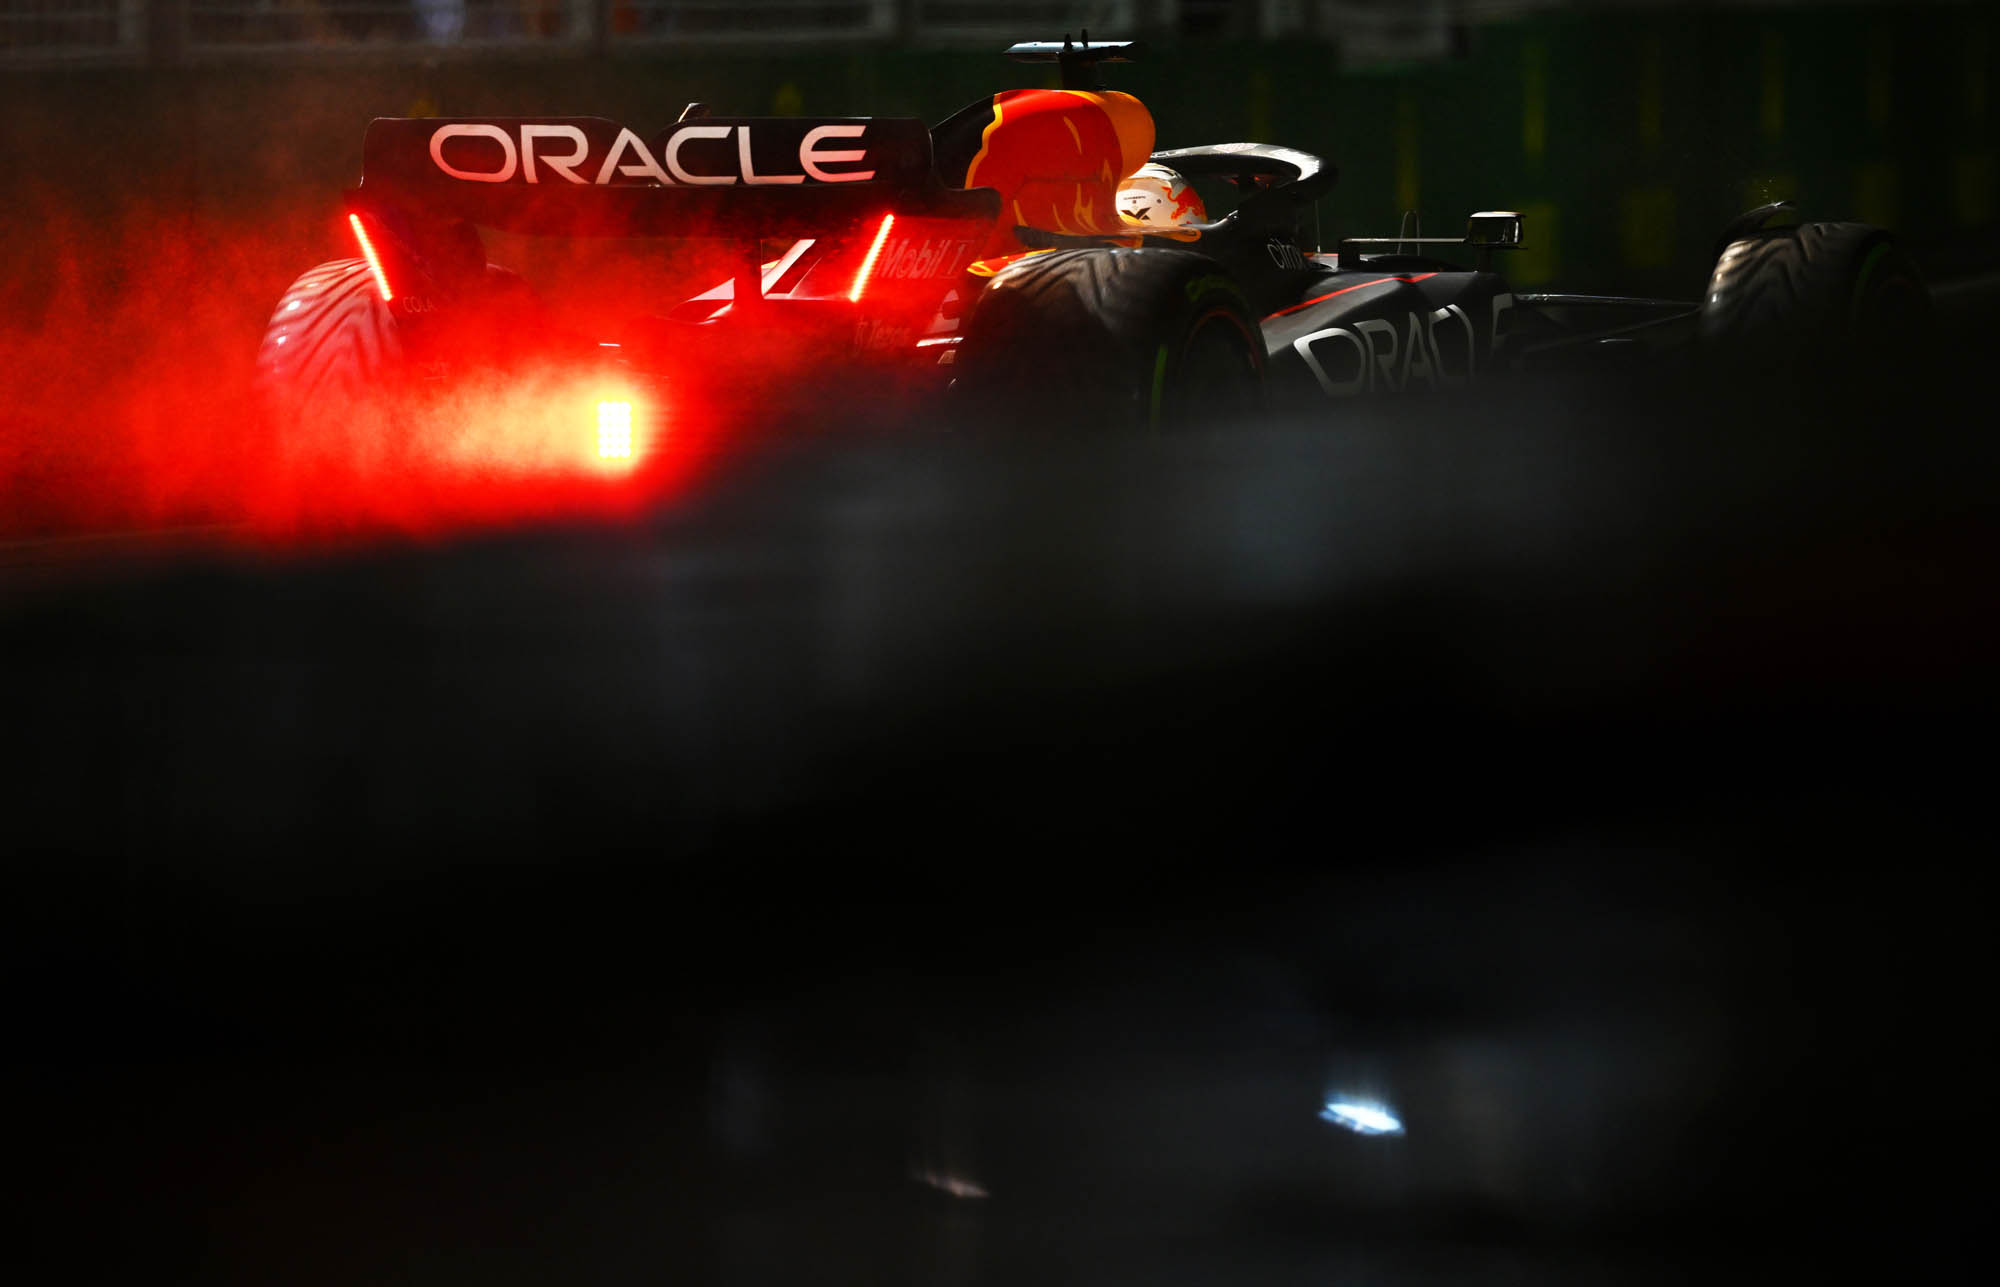 F1 - Max Verstappen (Red Bull), GP Σιγκαπούρης 2022